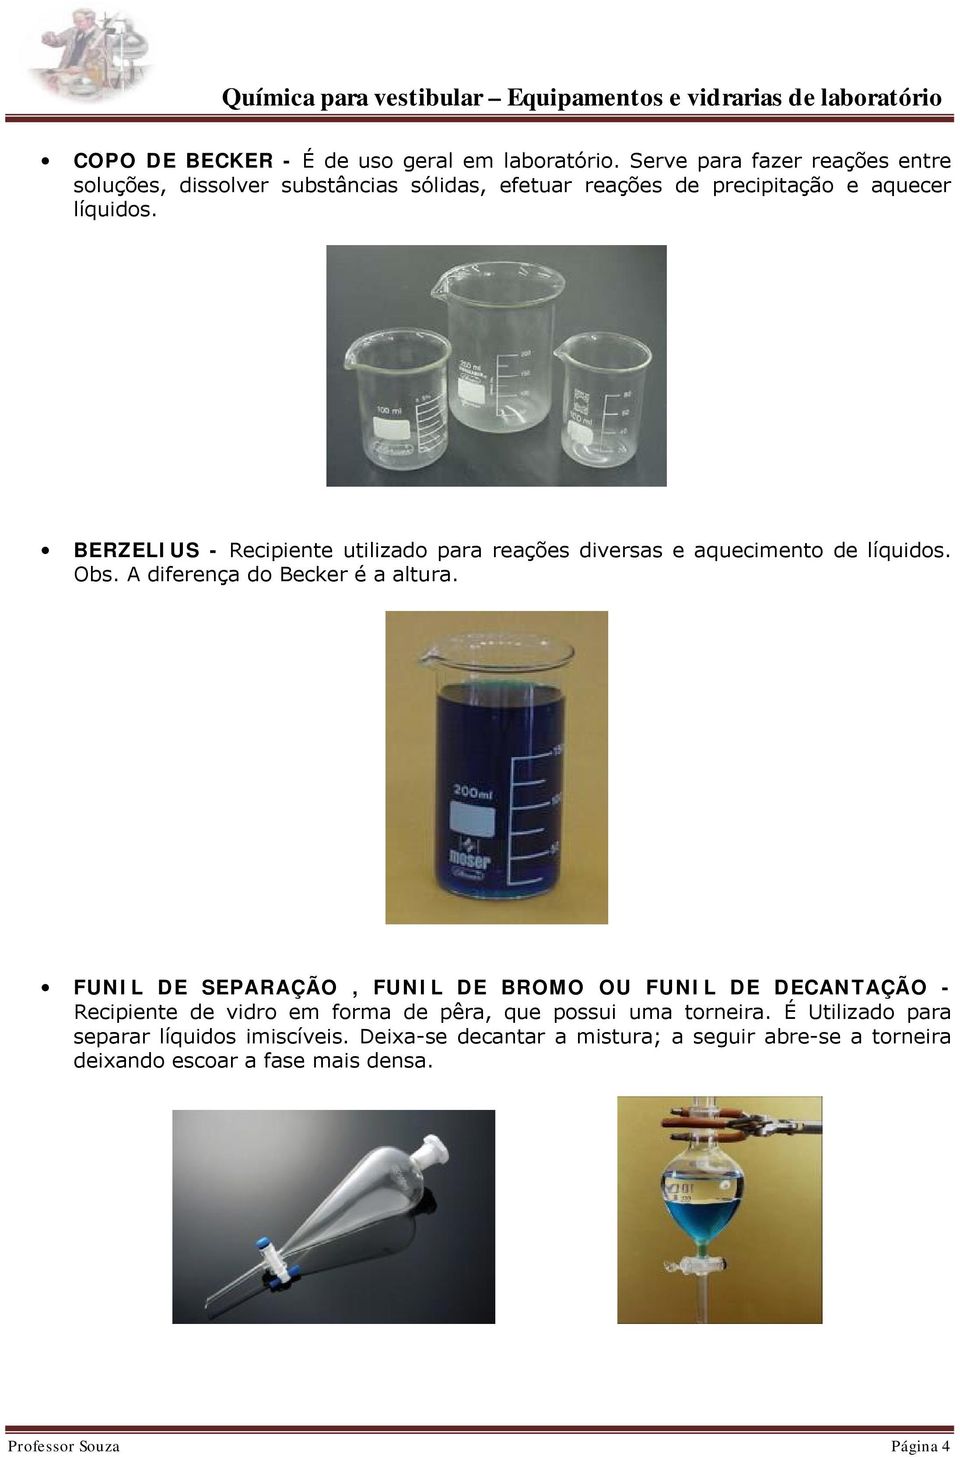 BERZELIUS - Recipiente utilizado para reações diversas e aquecimento de líquidos. Obs. A diferença do Becker é a altura.